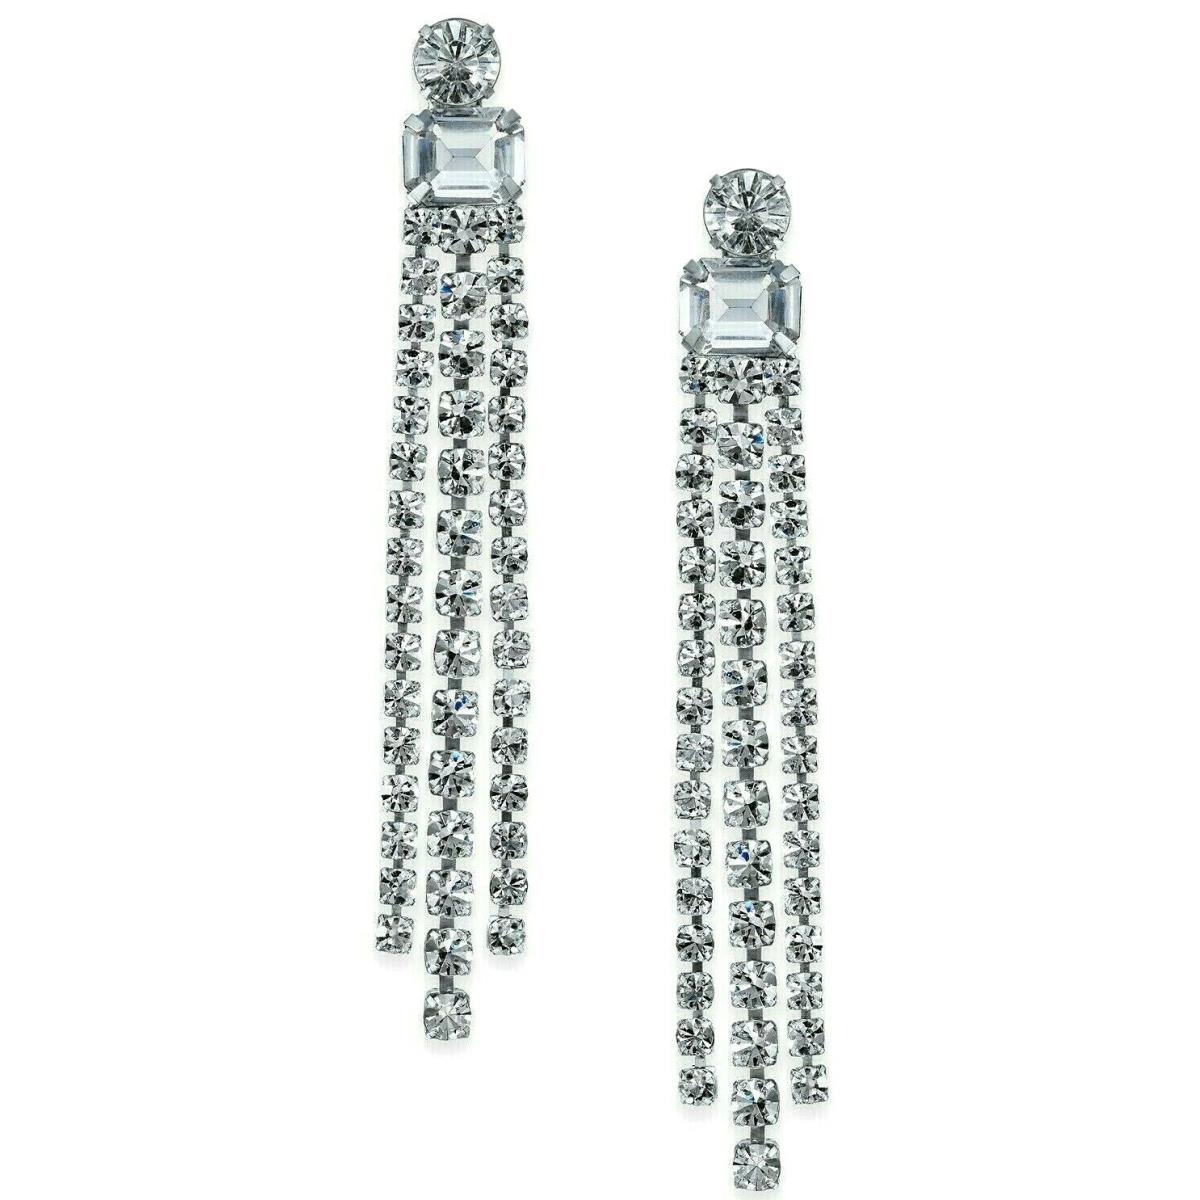 Kate Spade New York Glitzville Earrings 3 Crystal Fringe Chandelier Dangle Drop